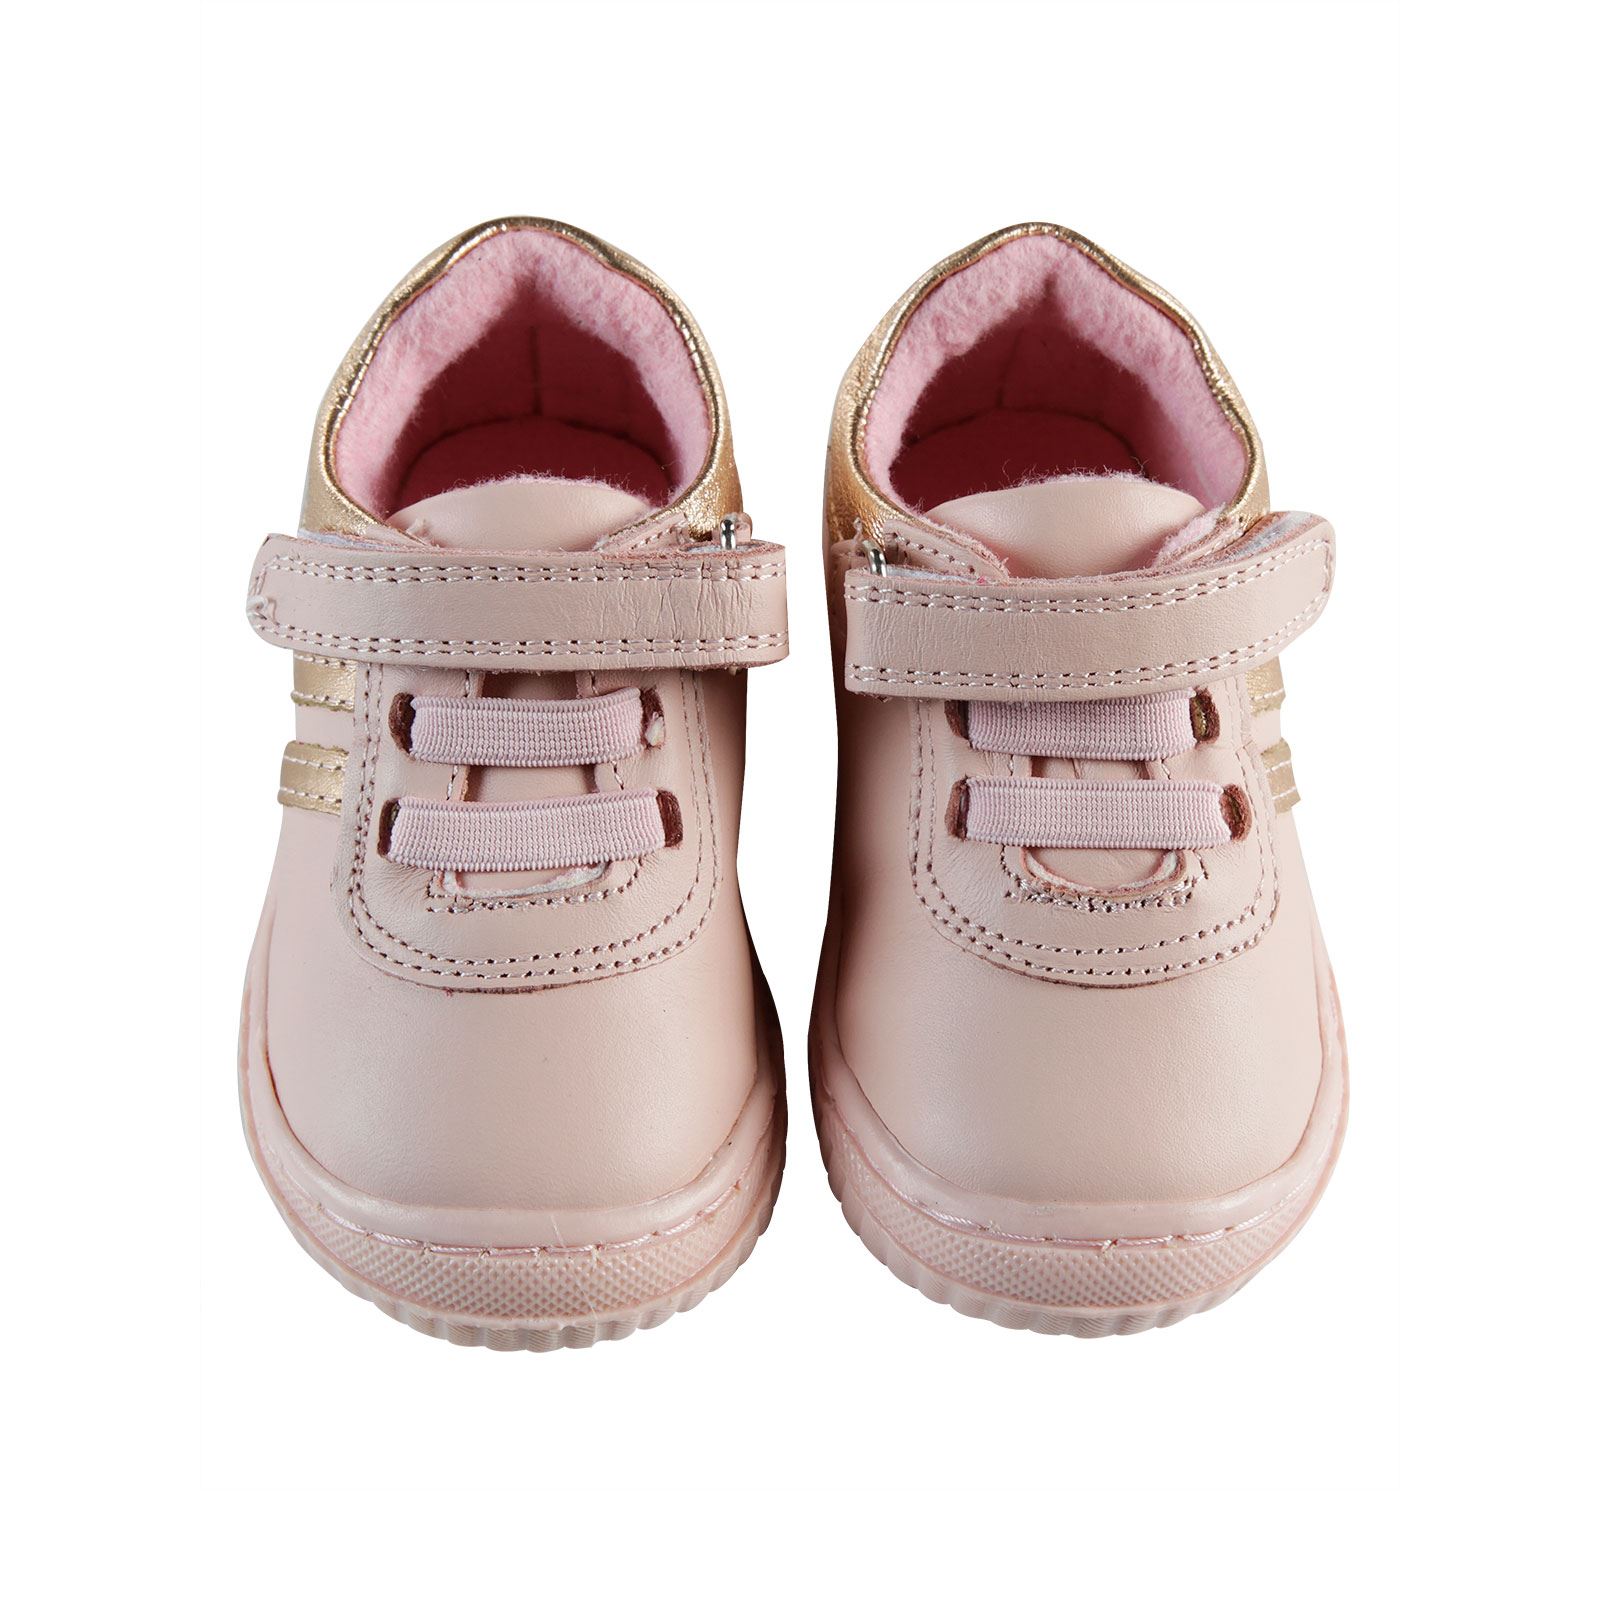 Baby Force Kız Bebek Deri İlkadım Ayakkabısı 19-22 Numara Pudra Pembe